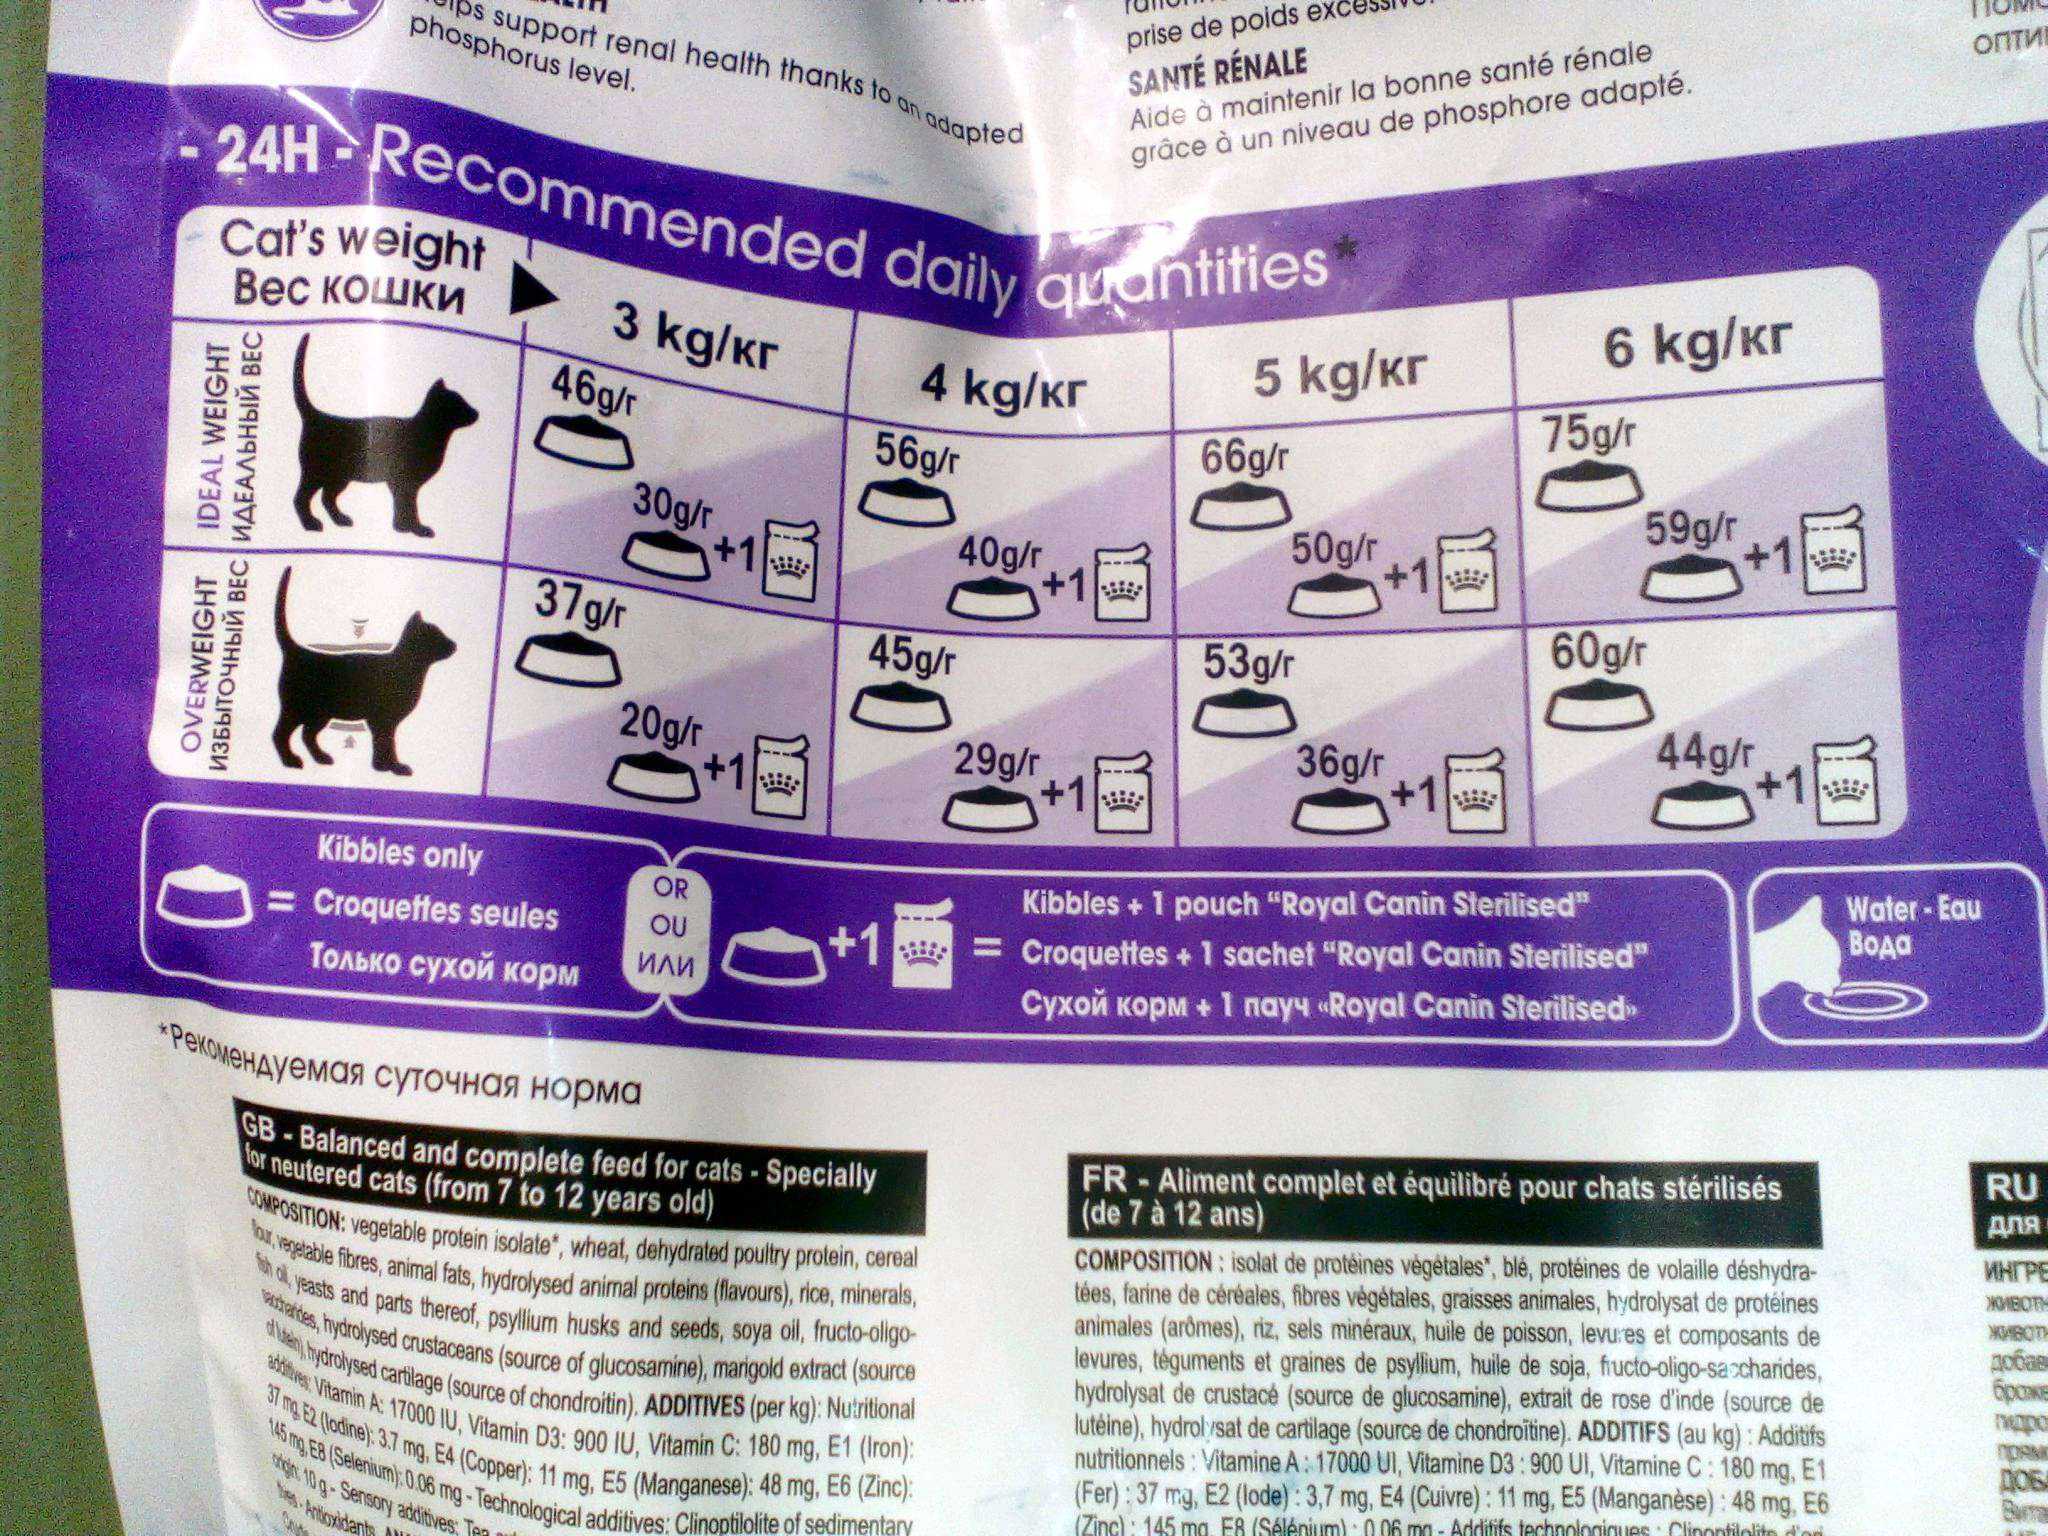 Royal canin для кошек: обзор видов, состав, советы ветеринара